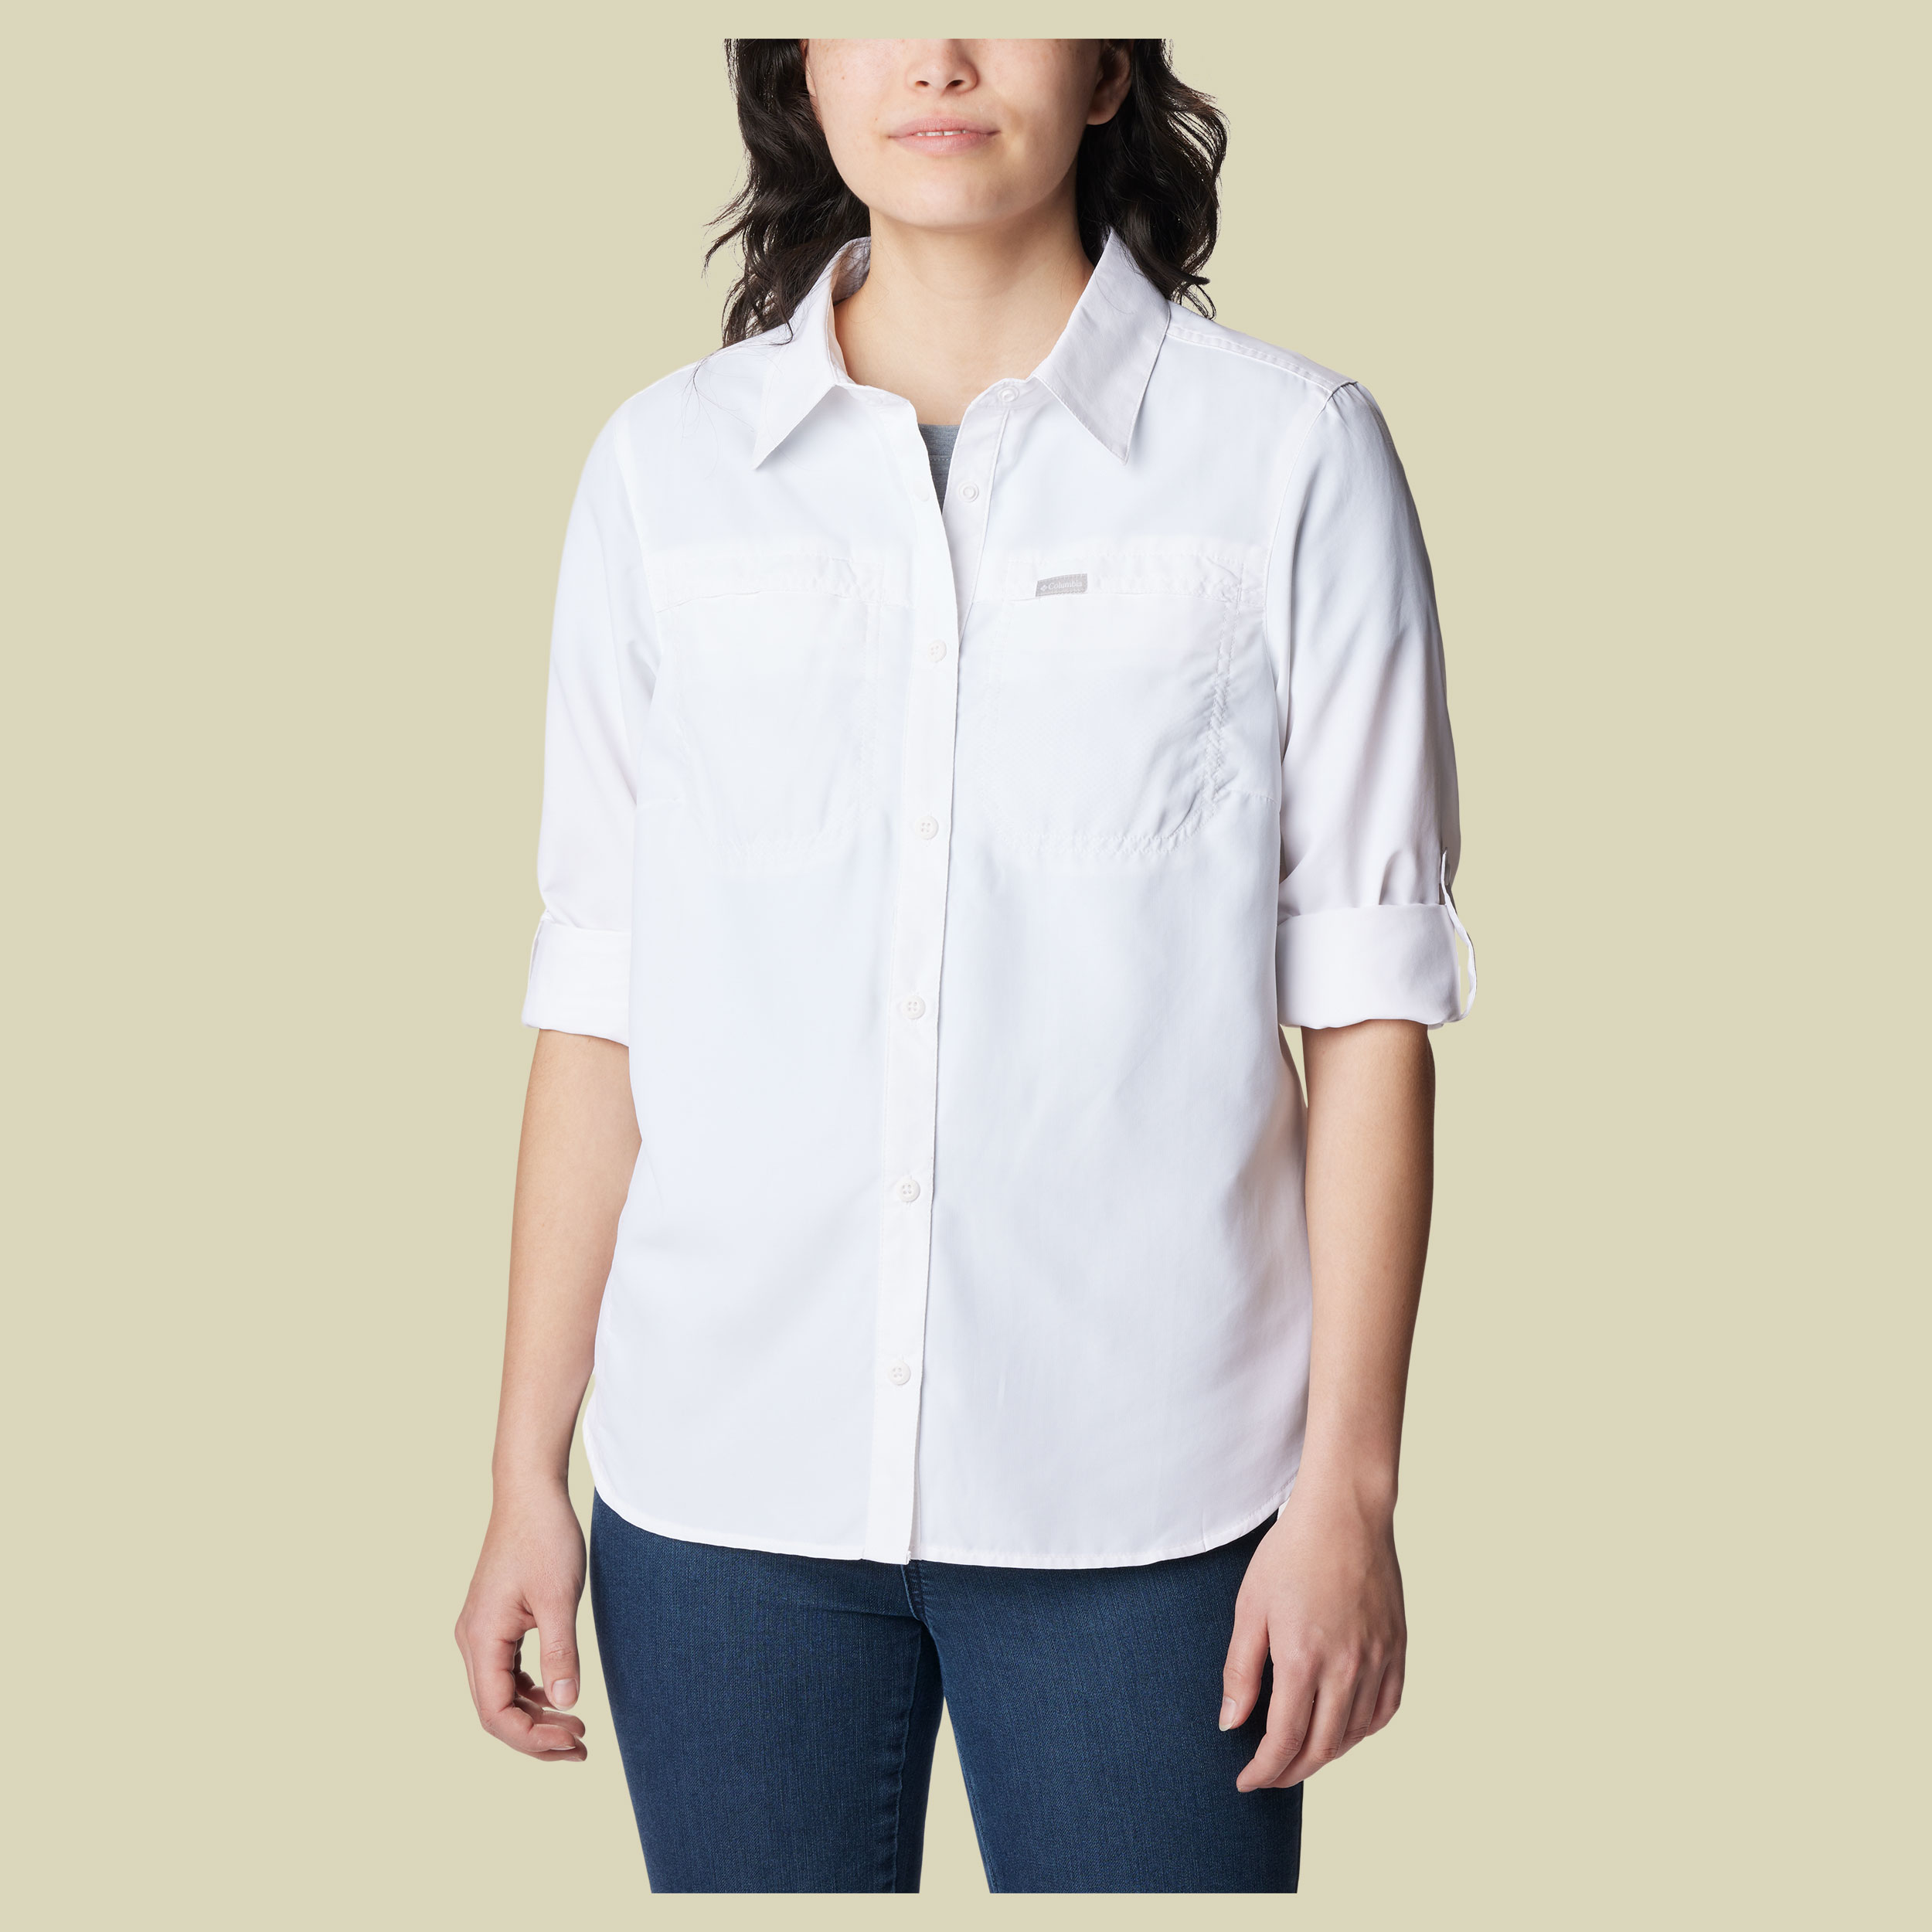 Silver Ridge 3.0 EUR Long Sleeve Shirt Women Größe S Farbe white